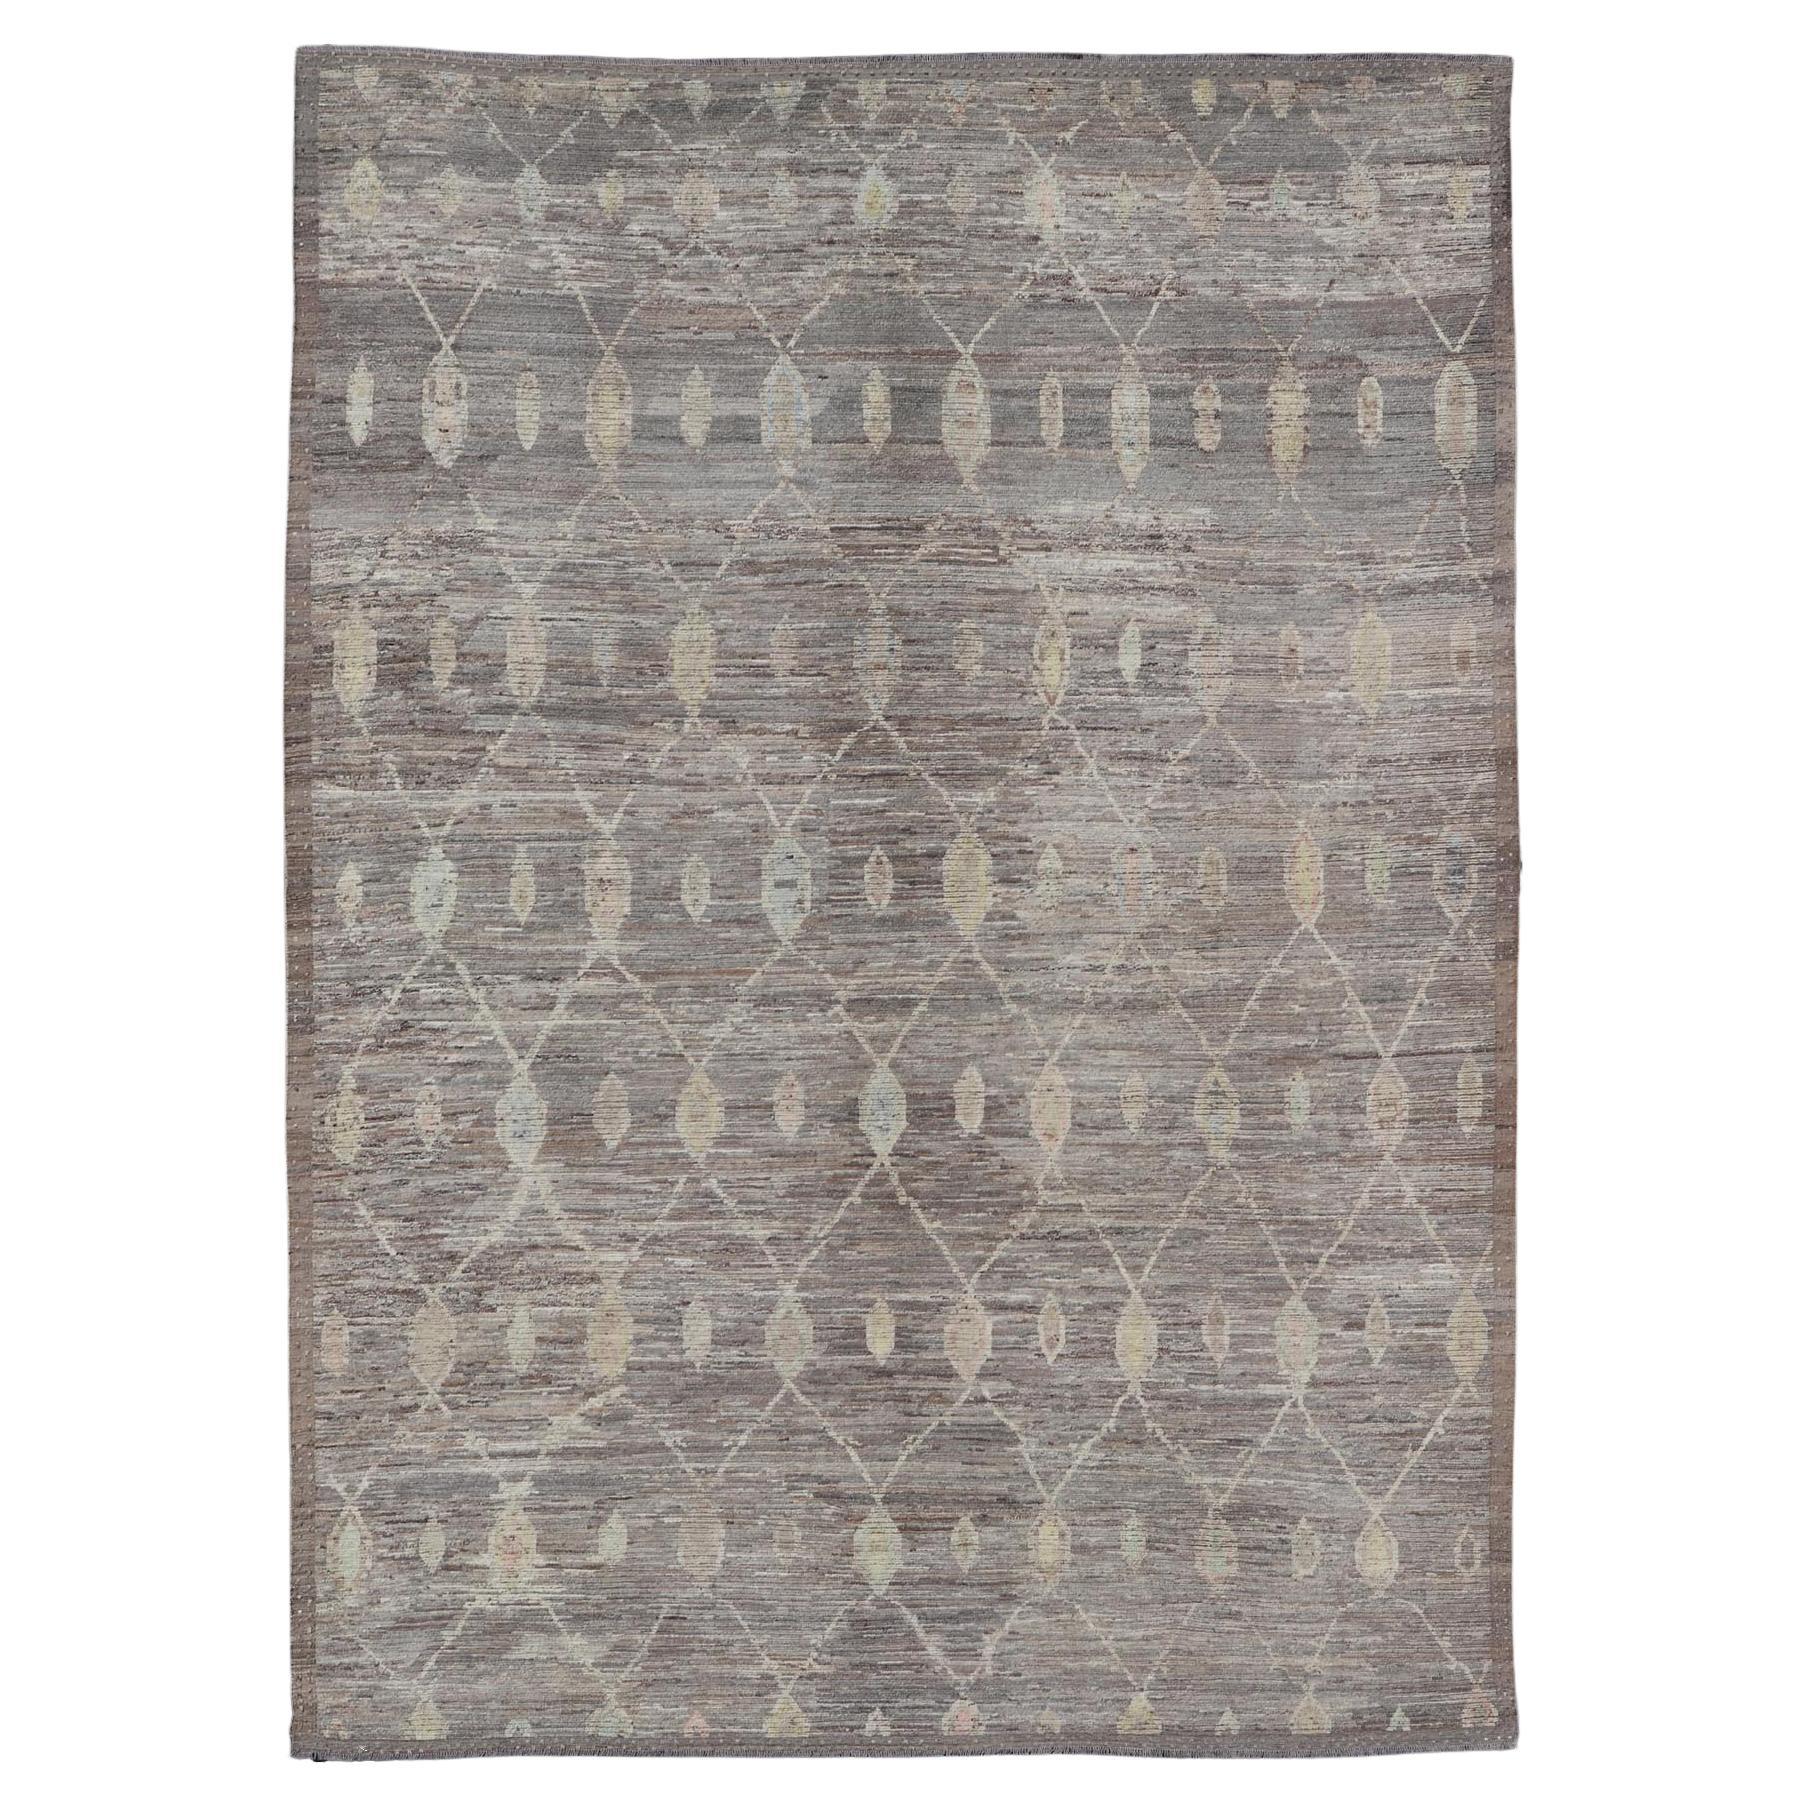 Moderner afghanischer Stammeskunst-Teppich aus Wolle mit subgeometrischem Design und mehrfarbigem Muster